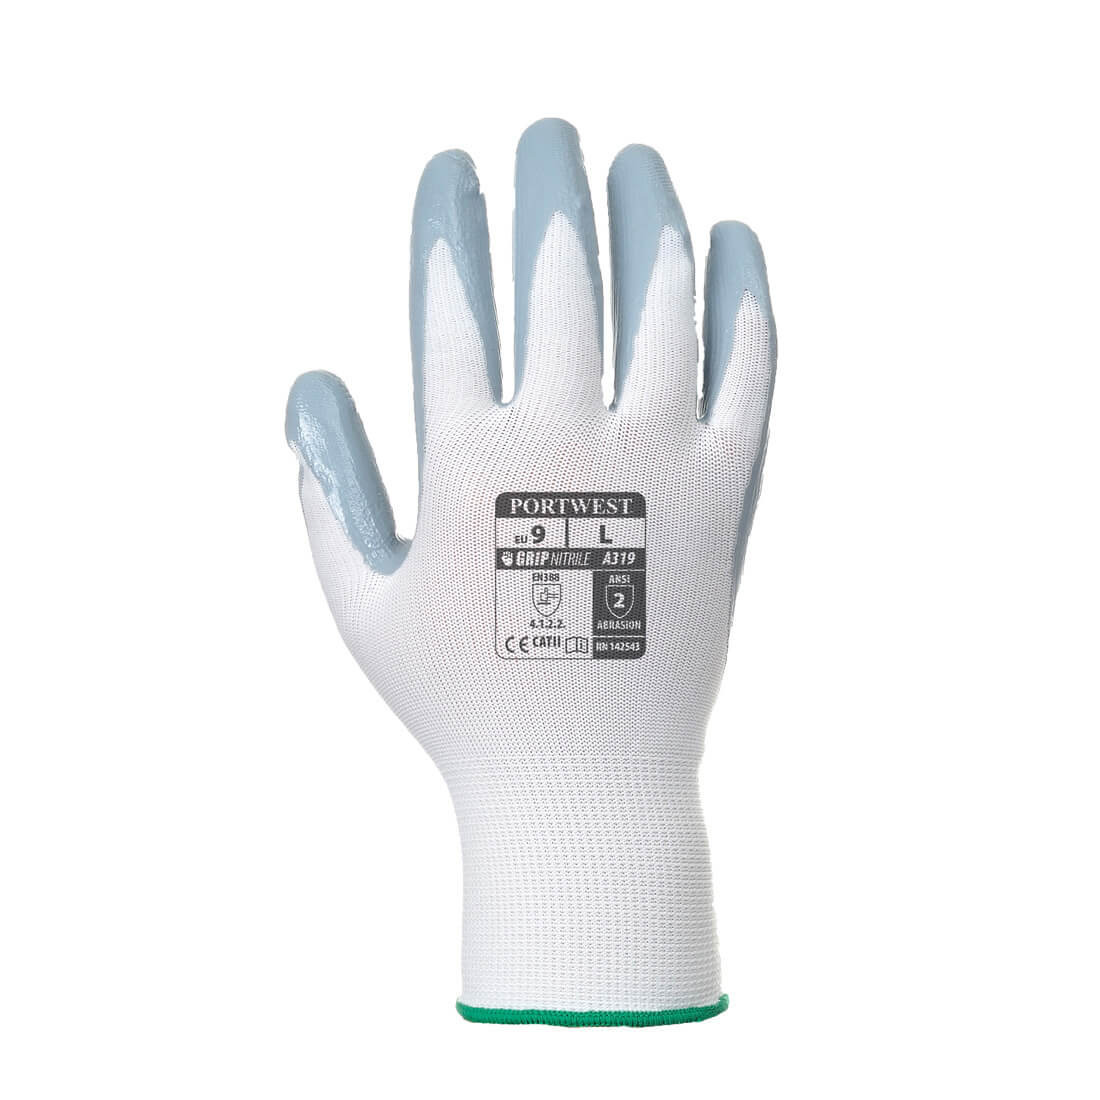 Flexo Grip Nitrile Glove (in Verkaufsverpackung) - Arbeitschutz